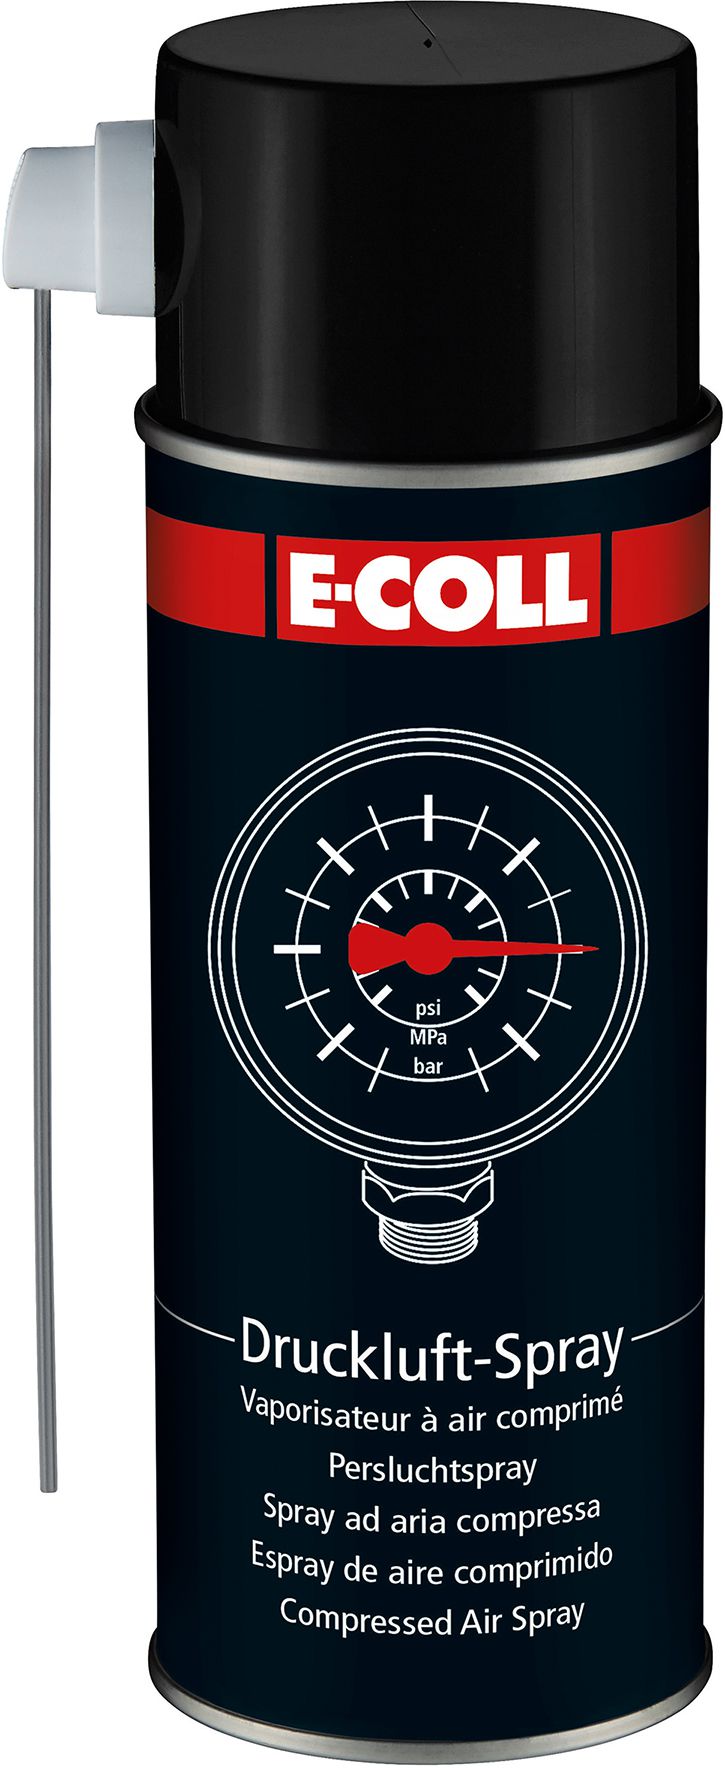 E-COLL Druckluft-Spray